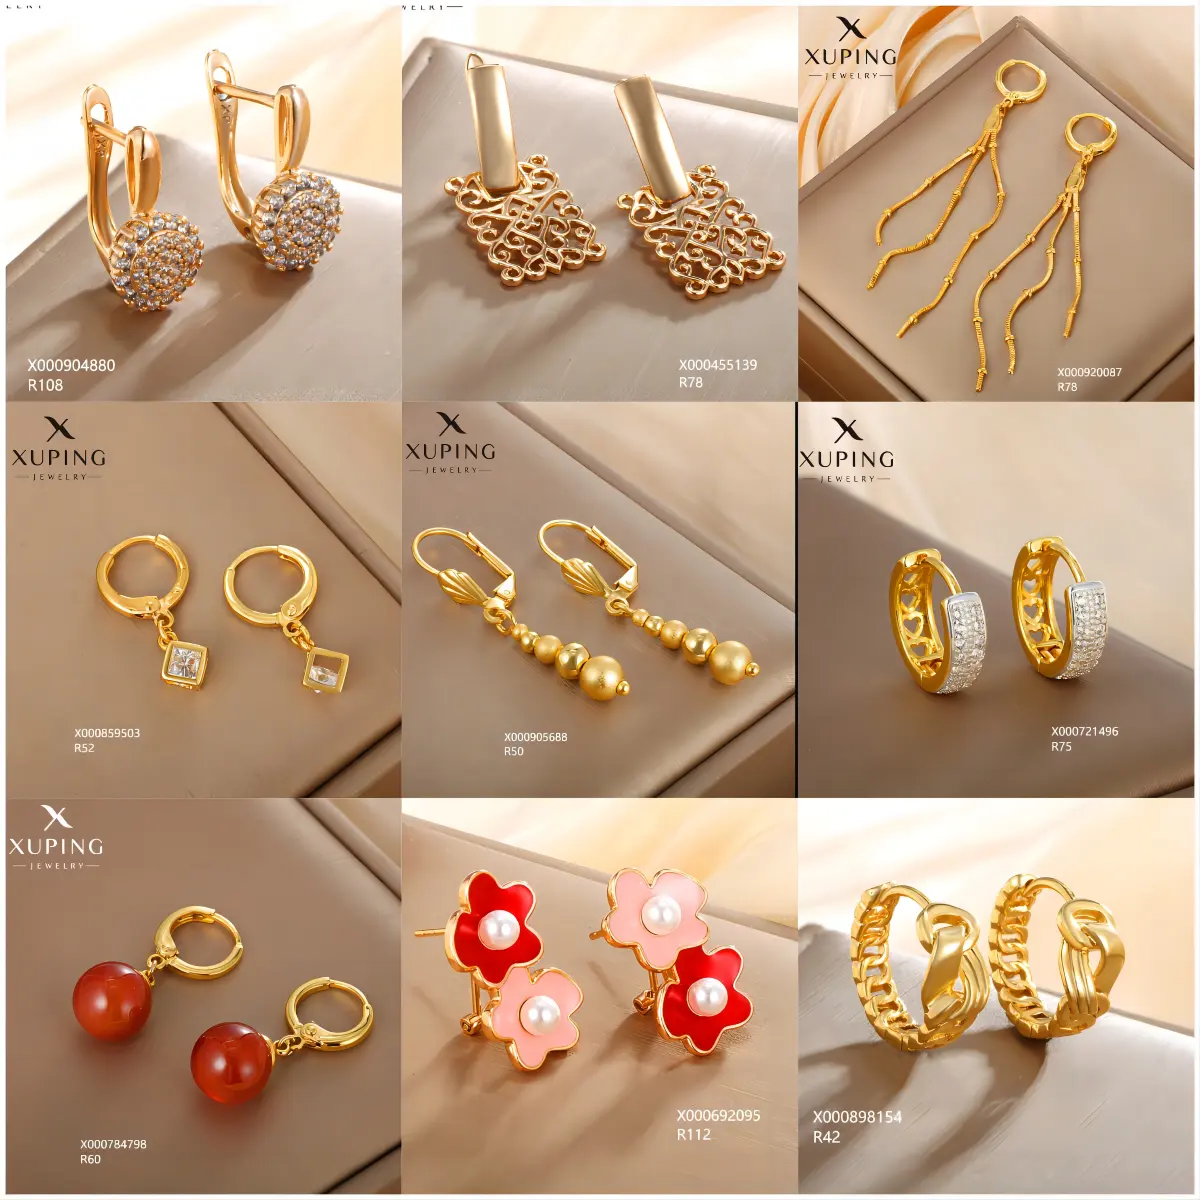 XUPING anting-anting panjang 14K 18K, perhiasan anting-anting lapis emas mutiara, anting-anting mewah kristal modis perhiasan wanita